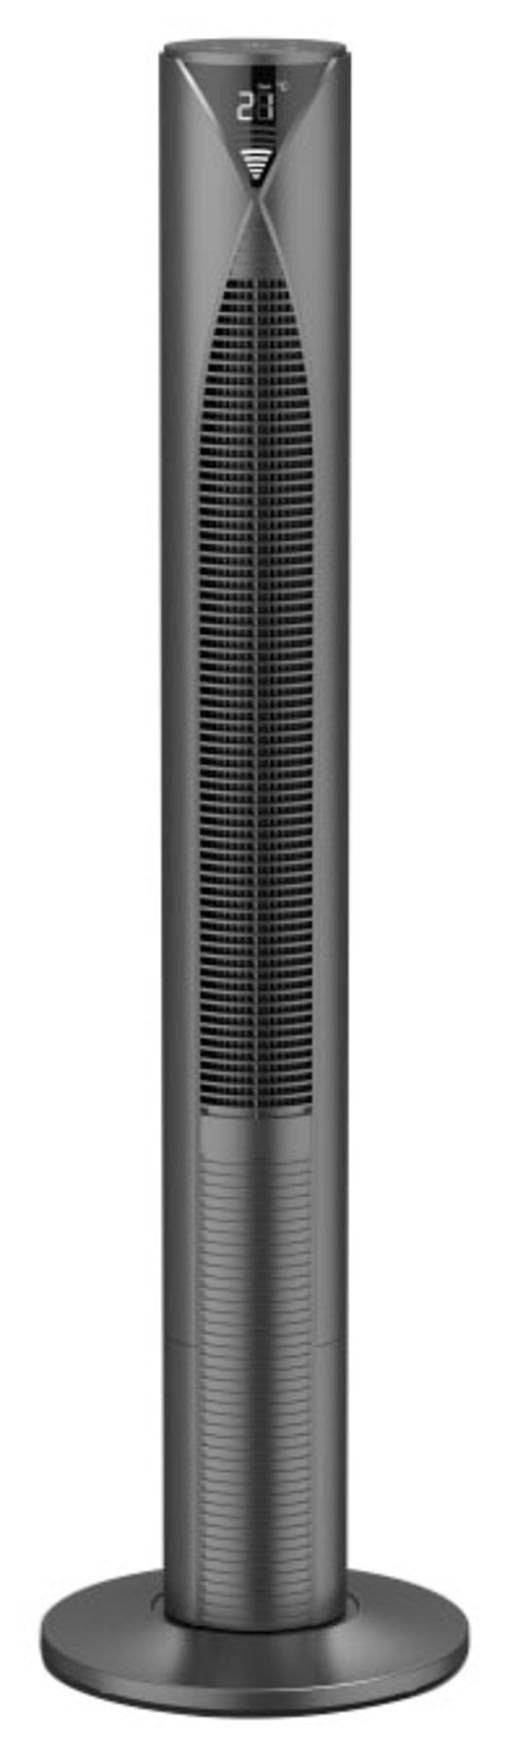 Hama Standventilator Smarter Standventilator mit Fernbedienung 117cm, Turm, Displayanzeige, 3 Geschwindigkeitsstufen, Timer, energiesparend mit Standby Modus